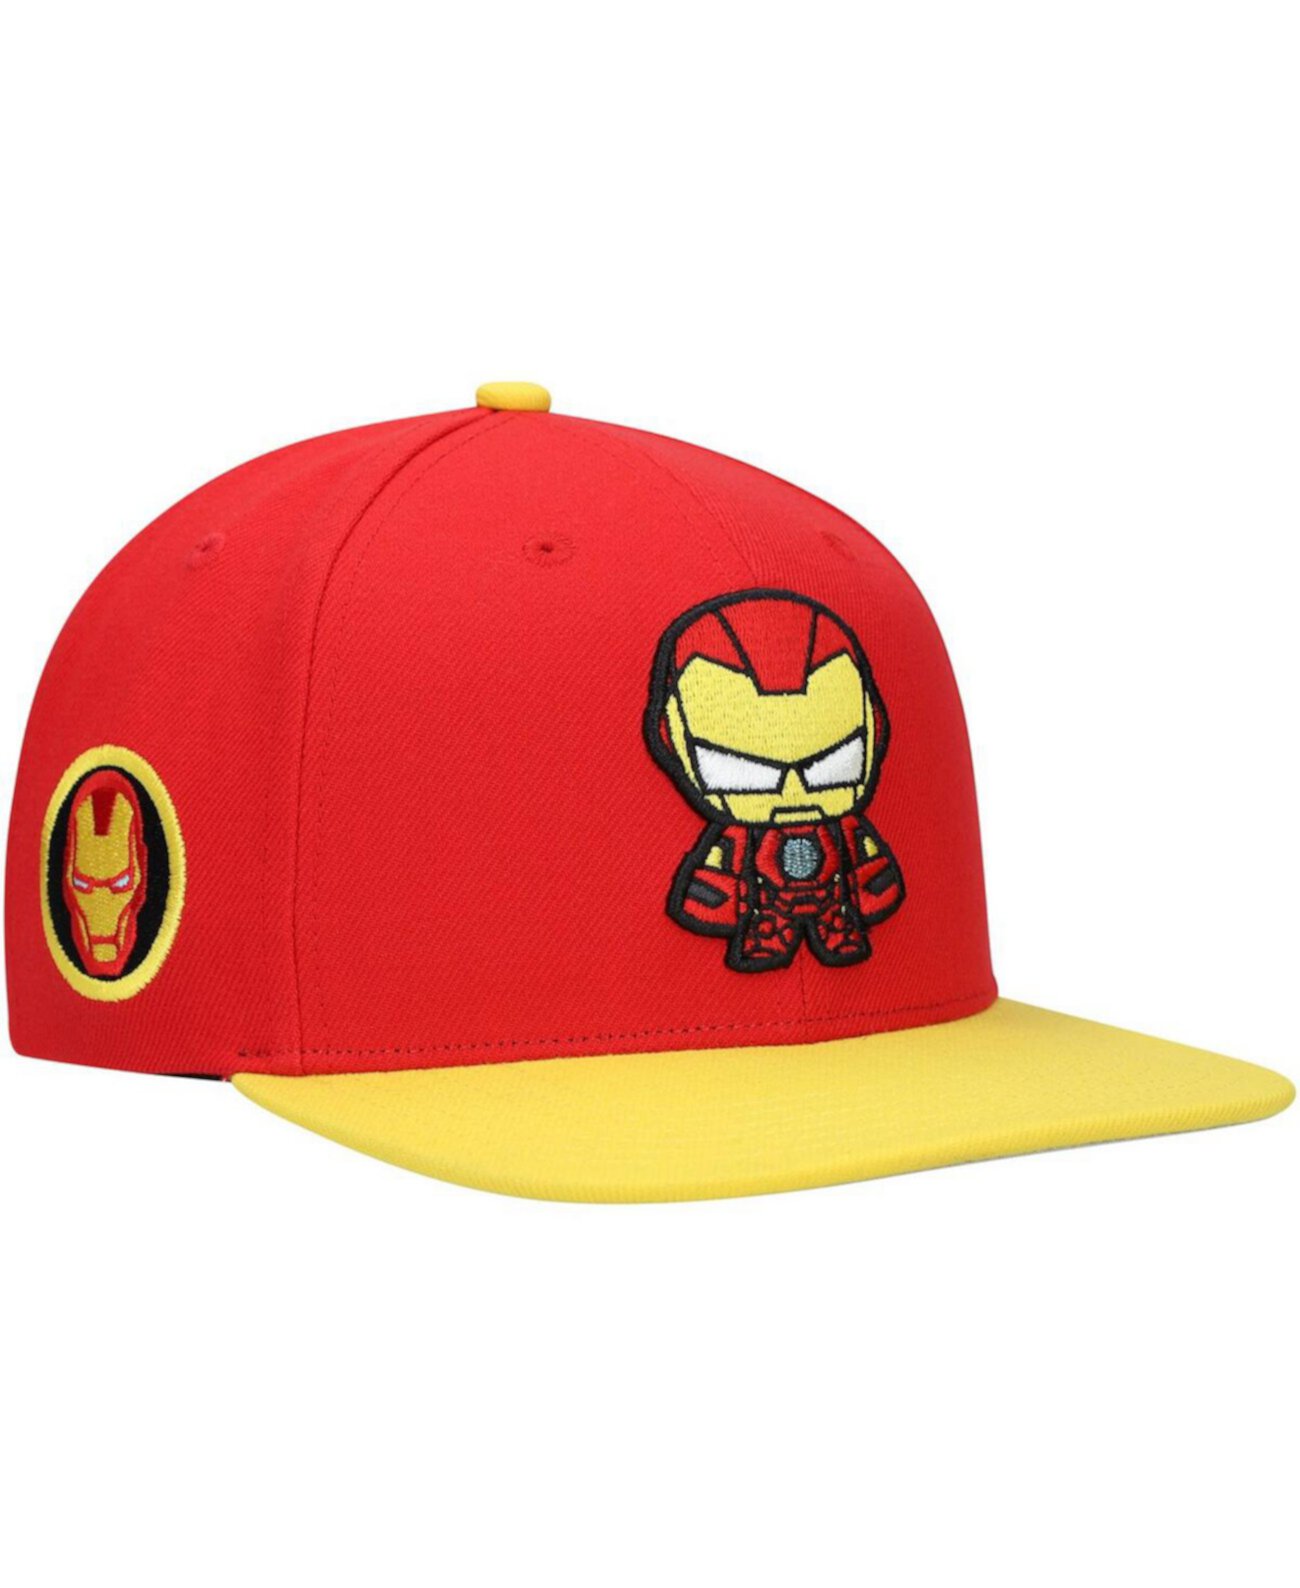 Красная шляпа Snapback с персонажем Железного человека для больших мальчиков и девочек Lids